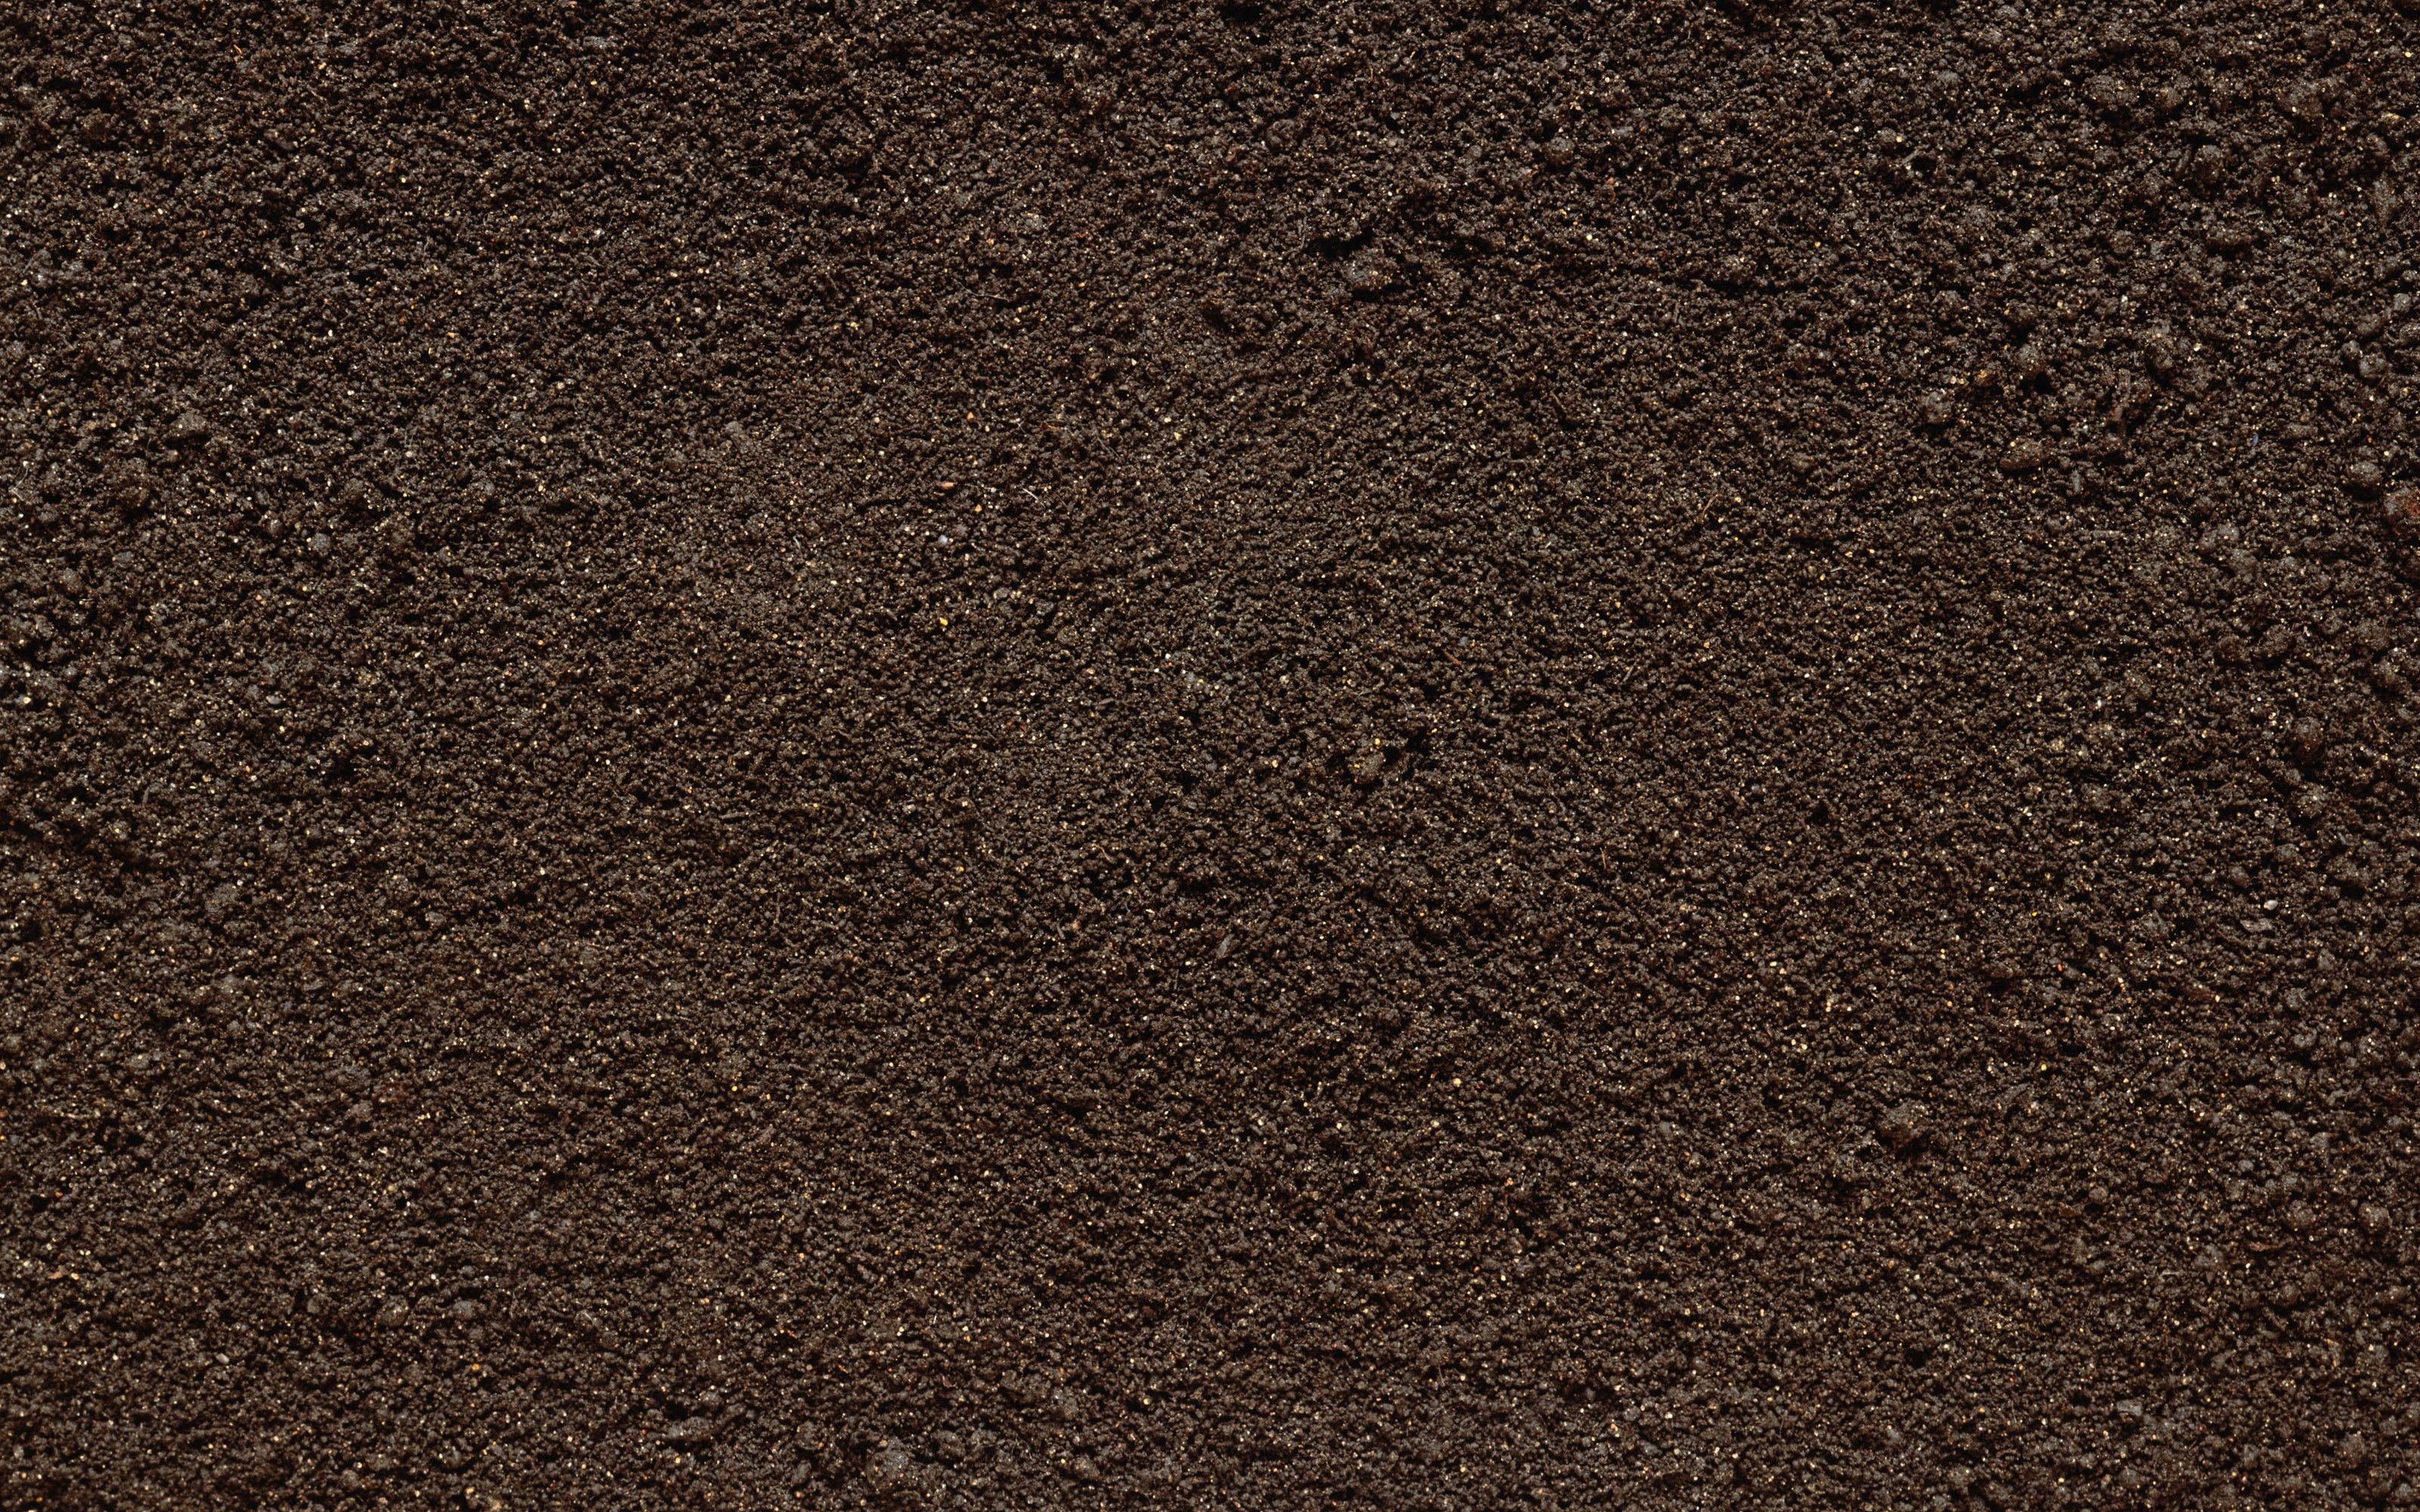 Dirt texture | Hayward Materials | Pinterest | Dirt texture